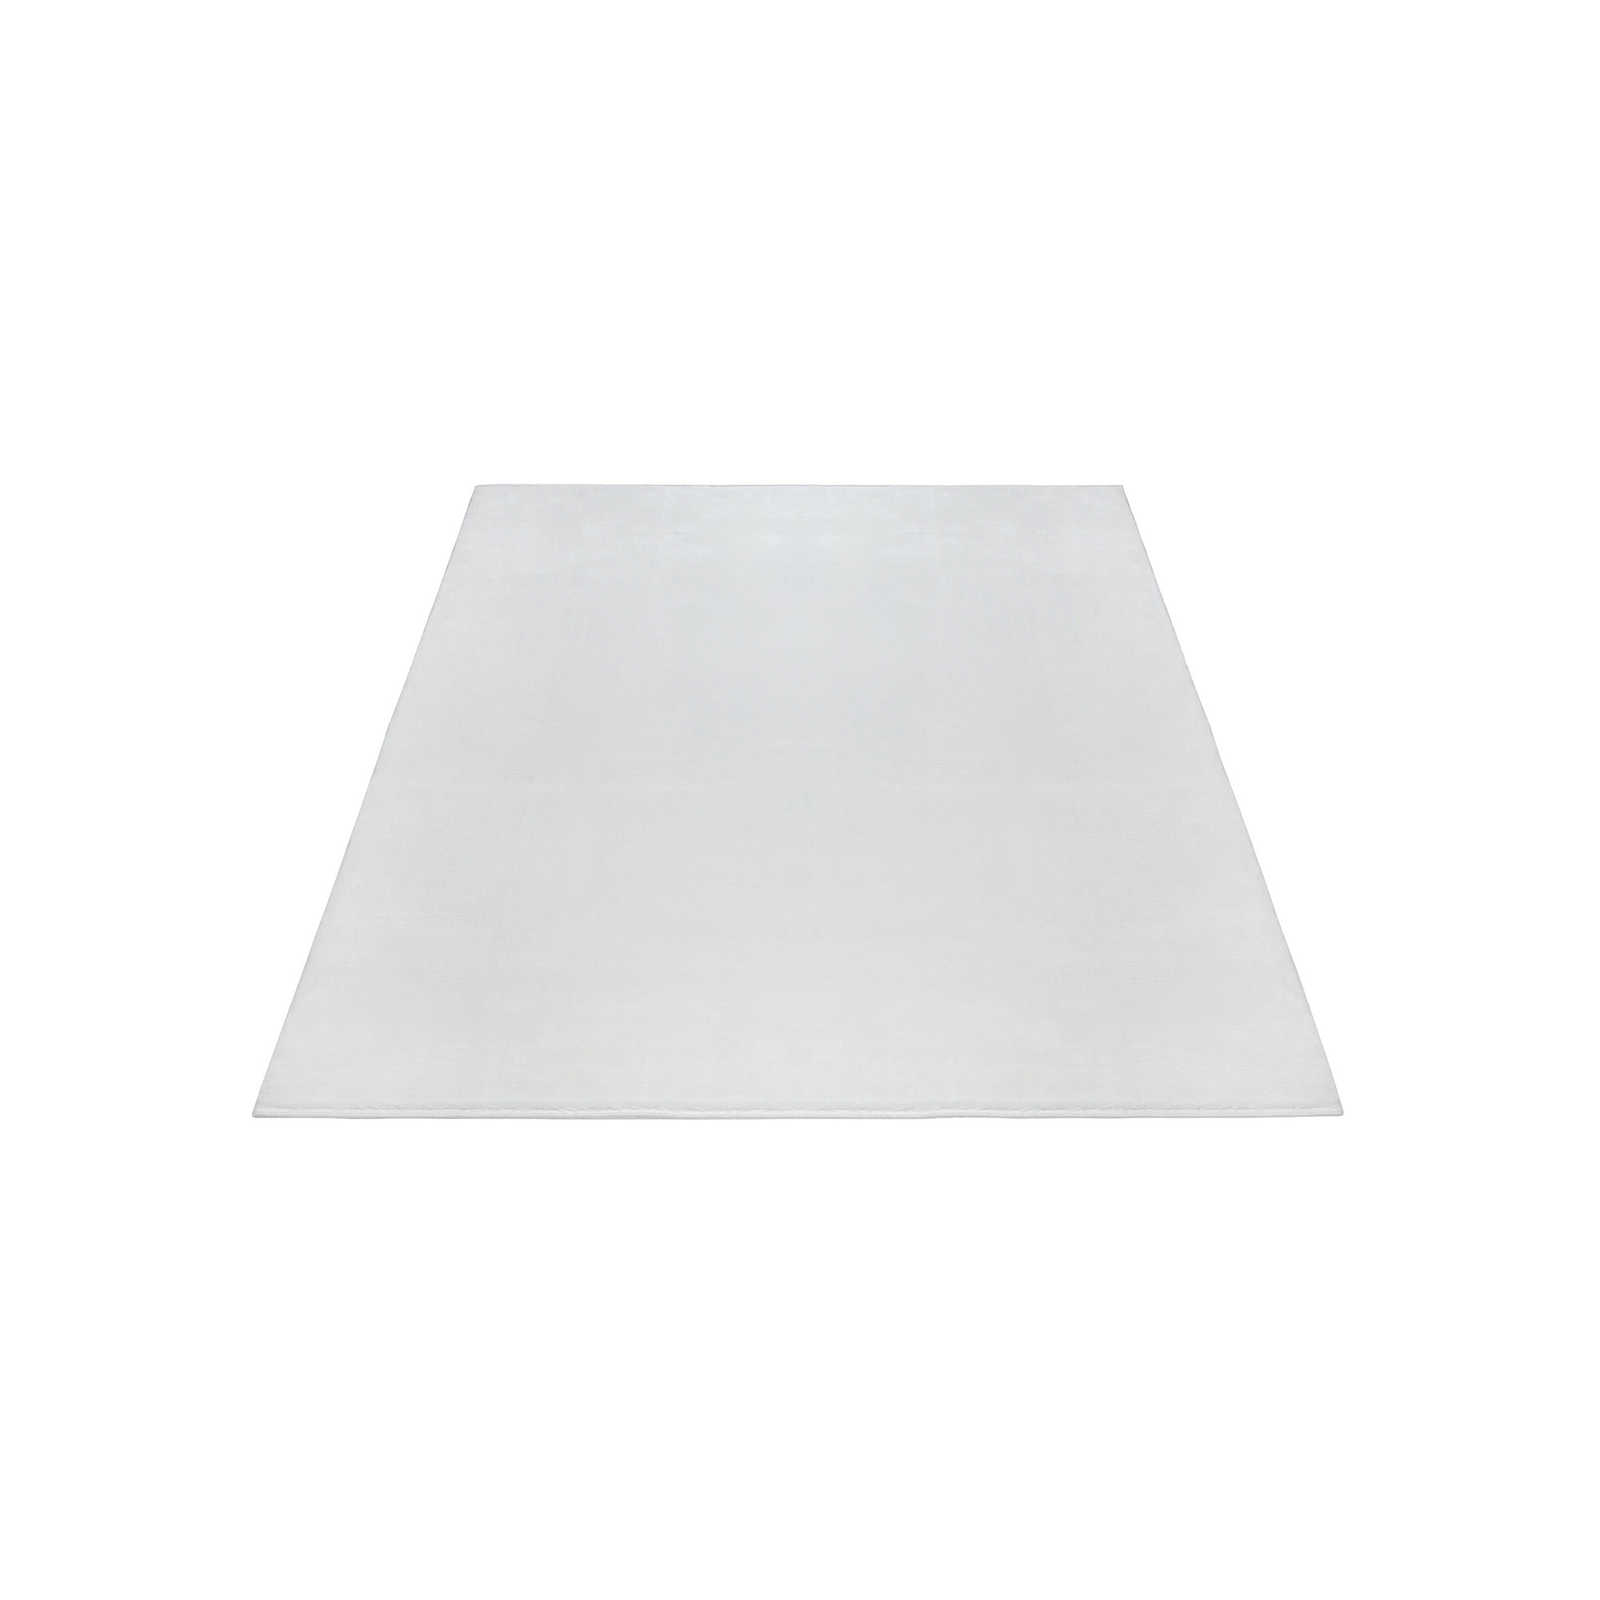 Flauschiger Hochflor Teppich in angenehmen Creme – 200 x 140 cm
